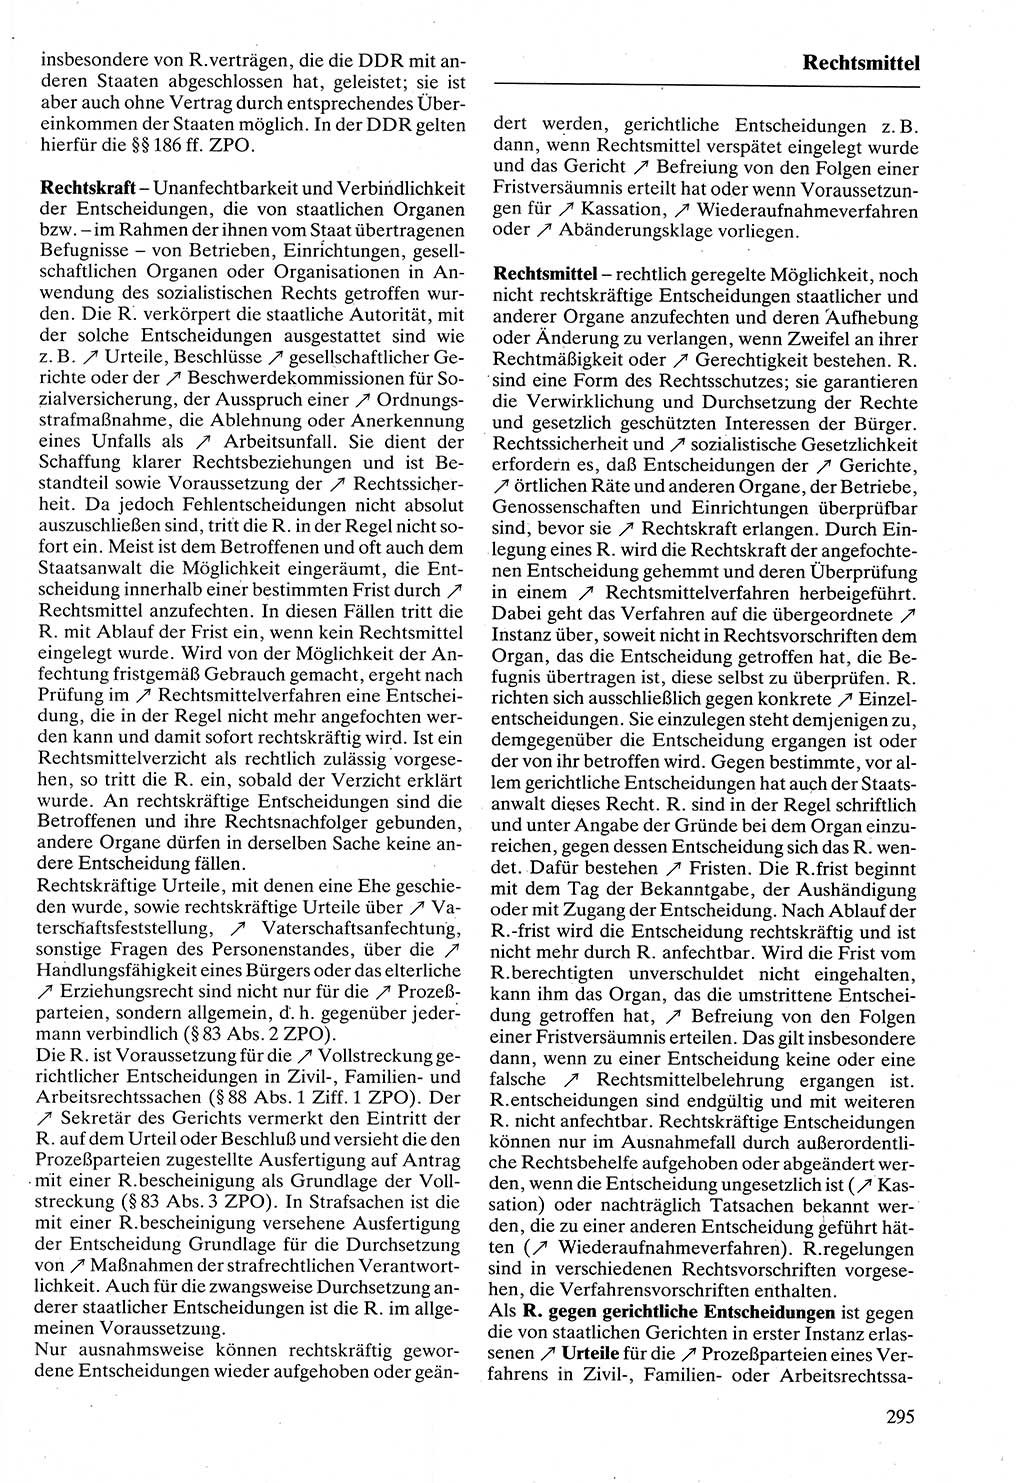 Rechtslexikon [Deutsche Demokratische Republik (DDR)] 1988, Seite 295 (Rechtslex. DDR 1988, S. 295)